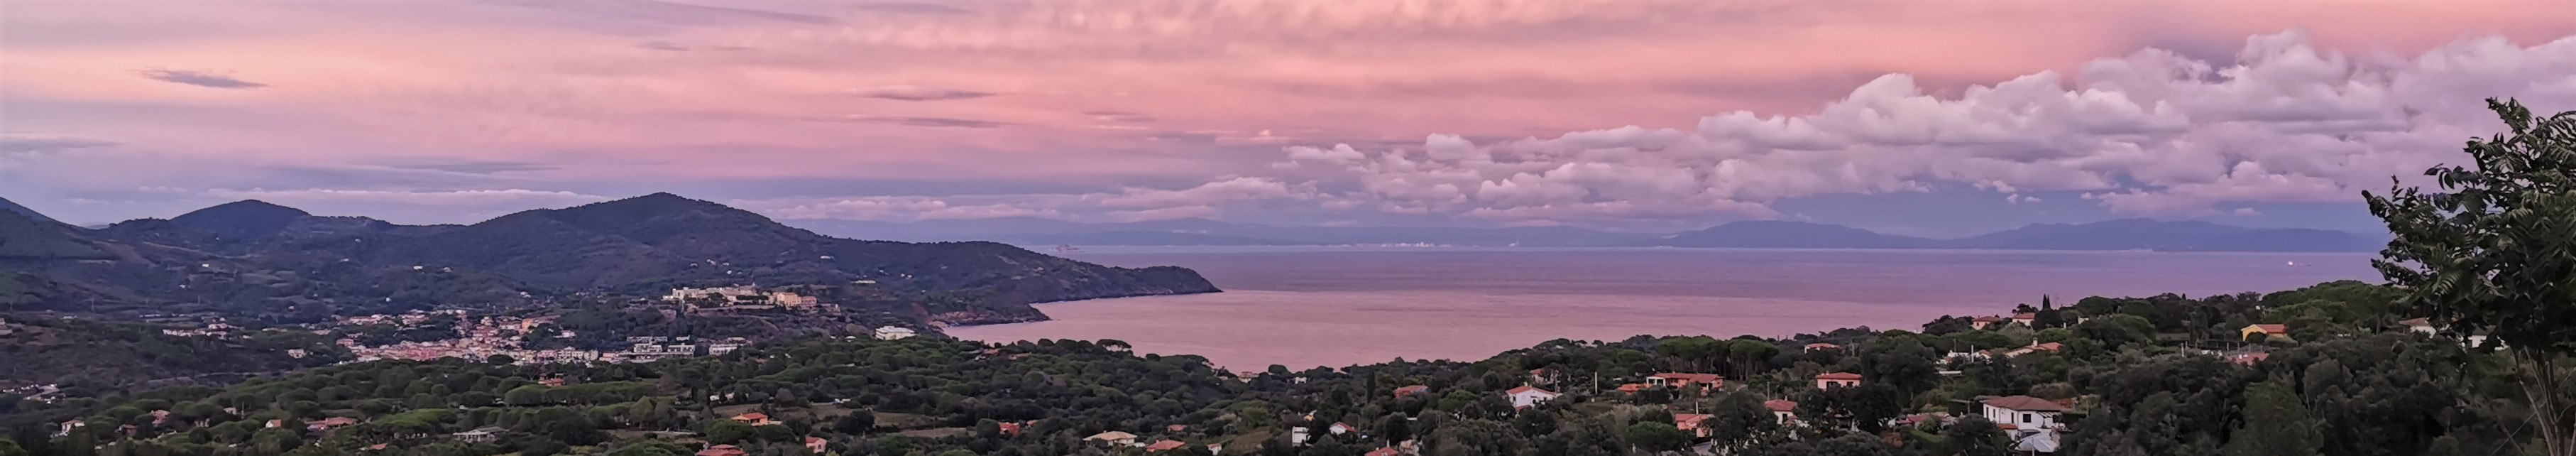 Sonnenuntergang auf Elba